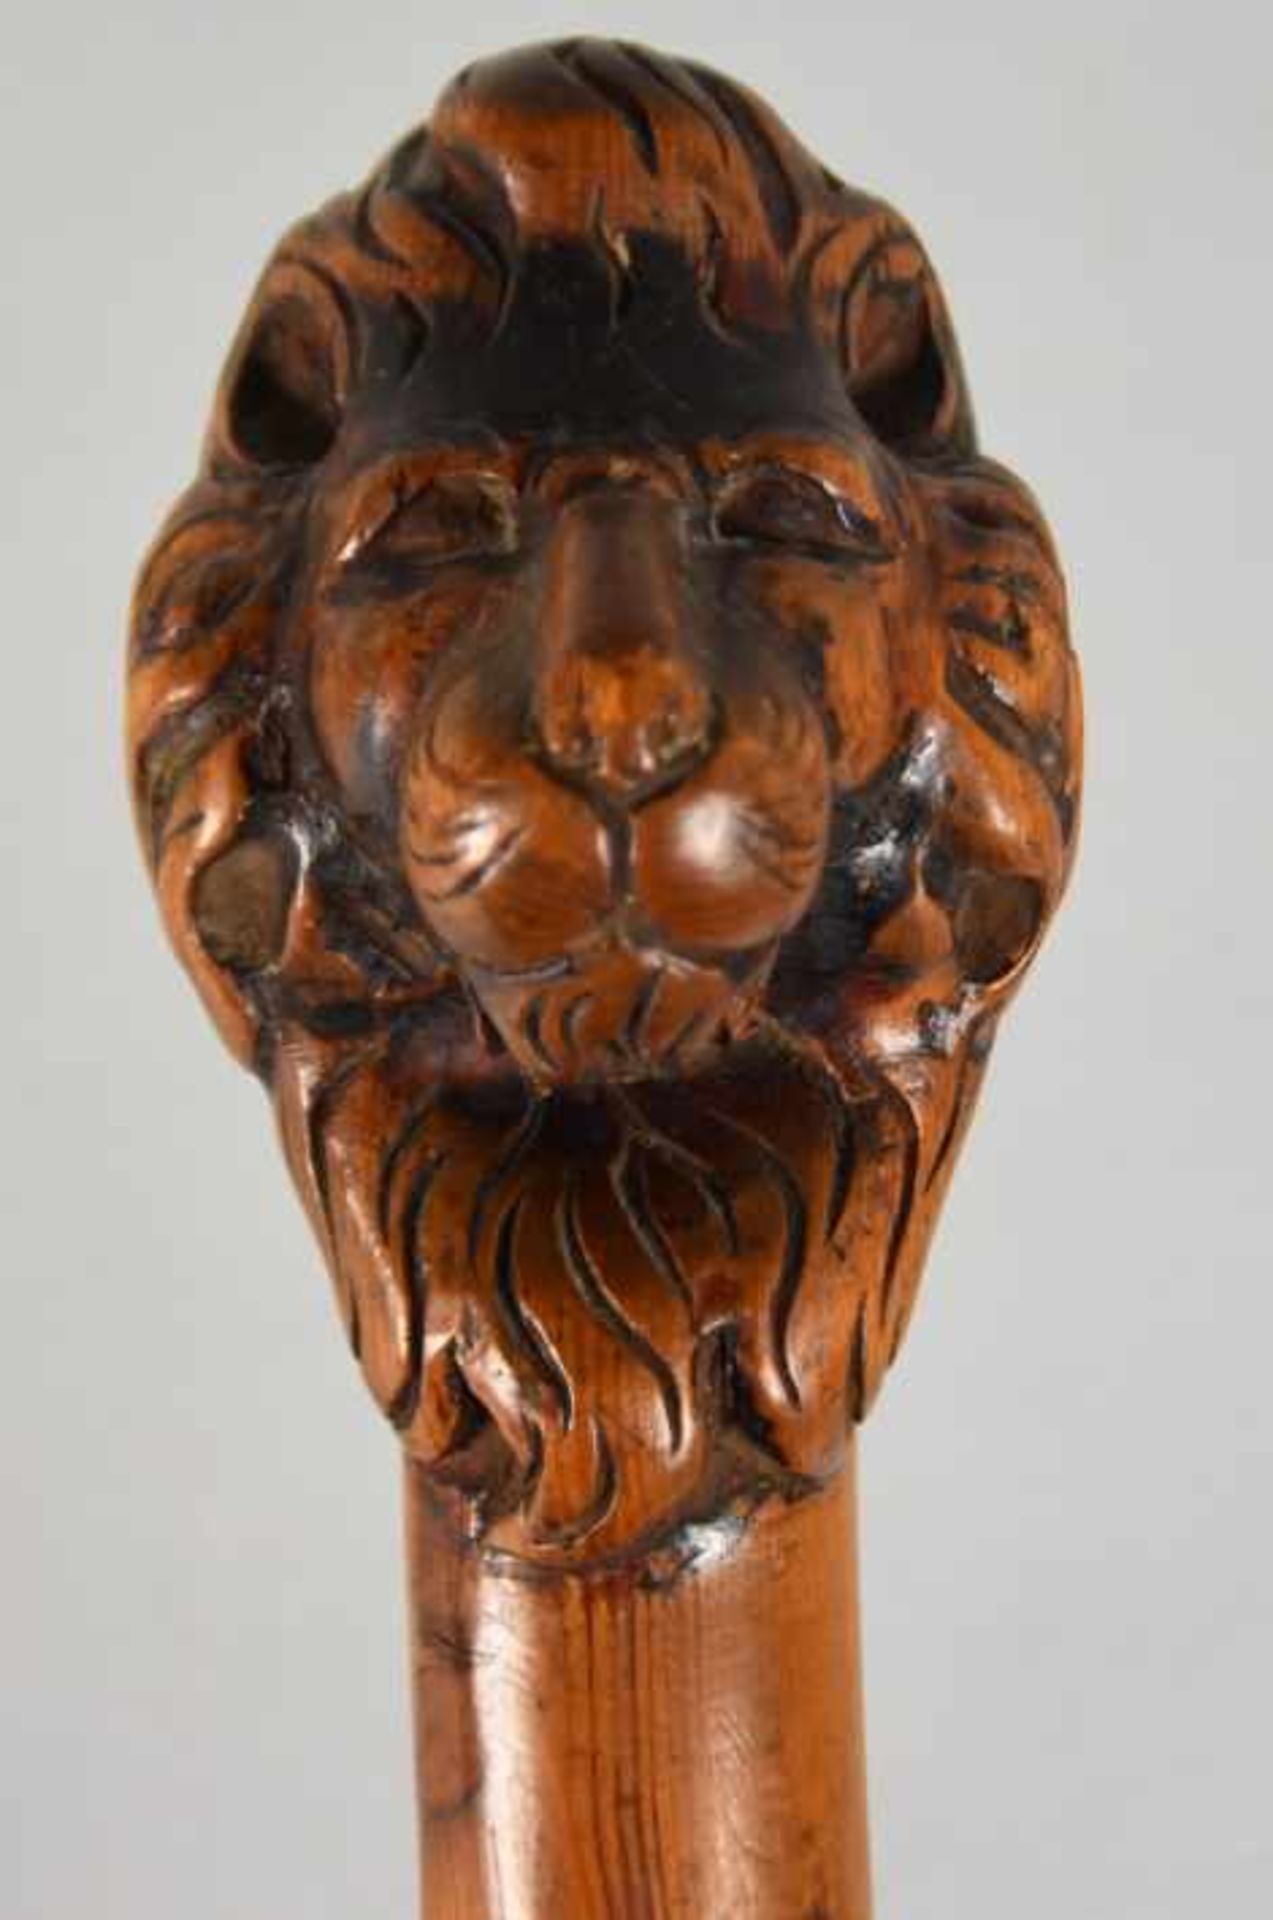 SPAZIERSTOCK Holz geschnitzt, mit Löwenkopf als Knauf und reliefierten Porträt eines Mannes, - Image 3 of 4